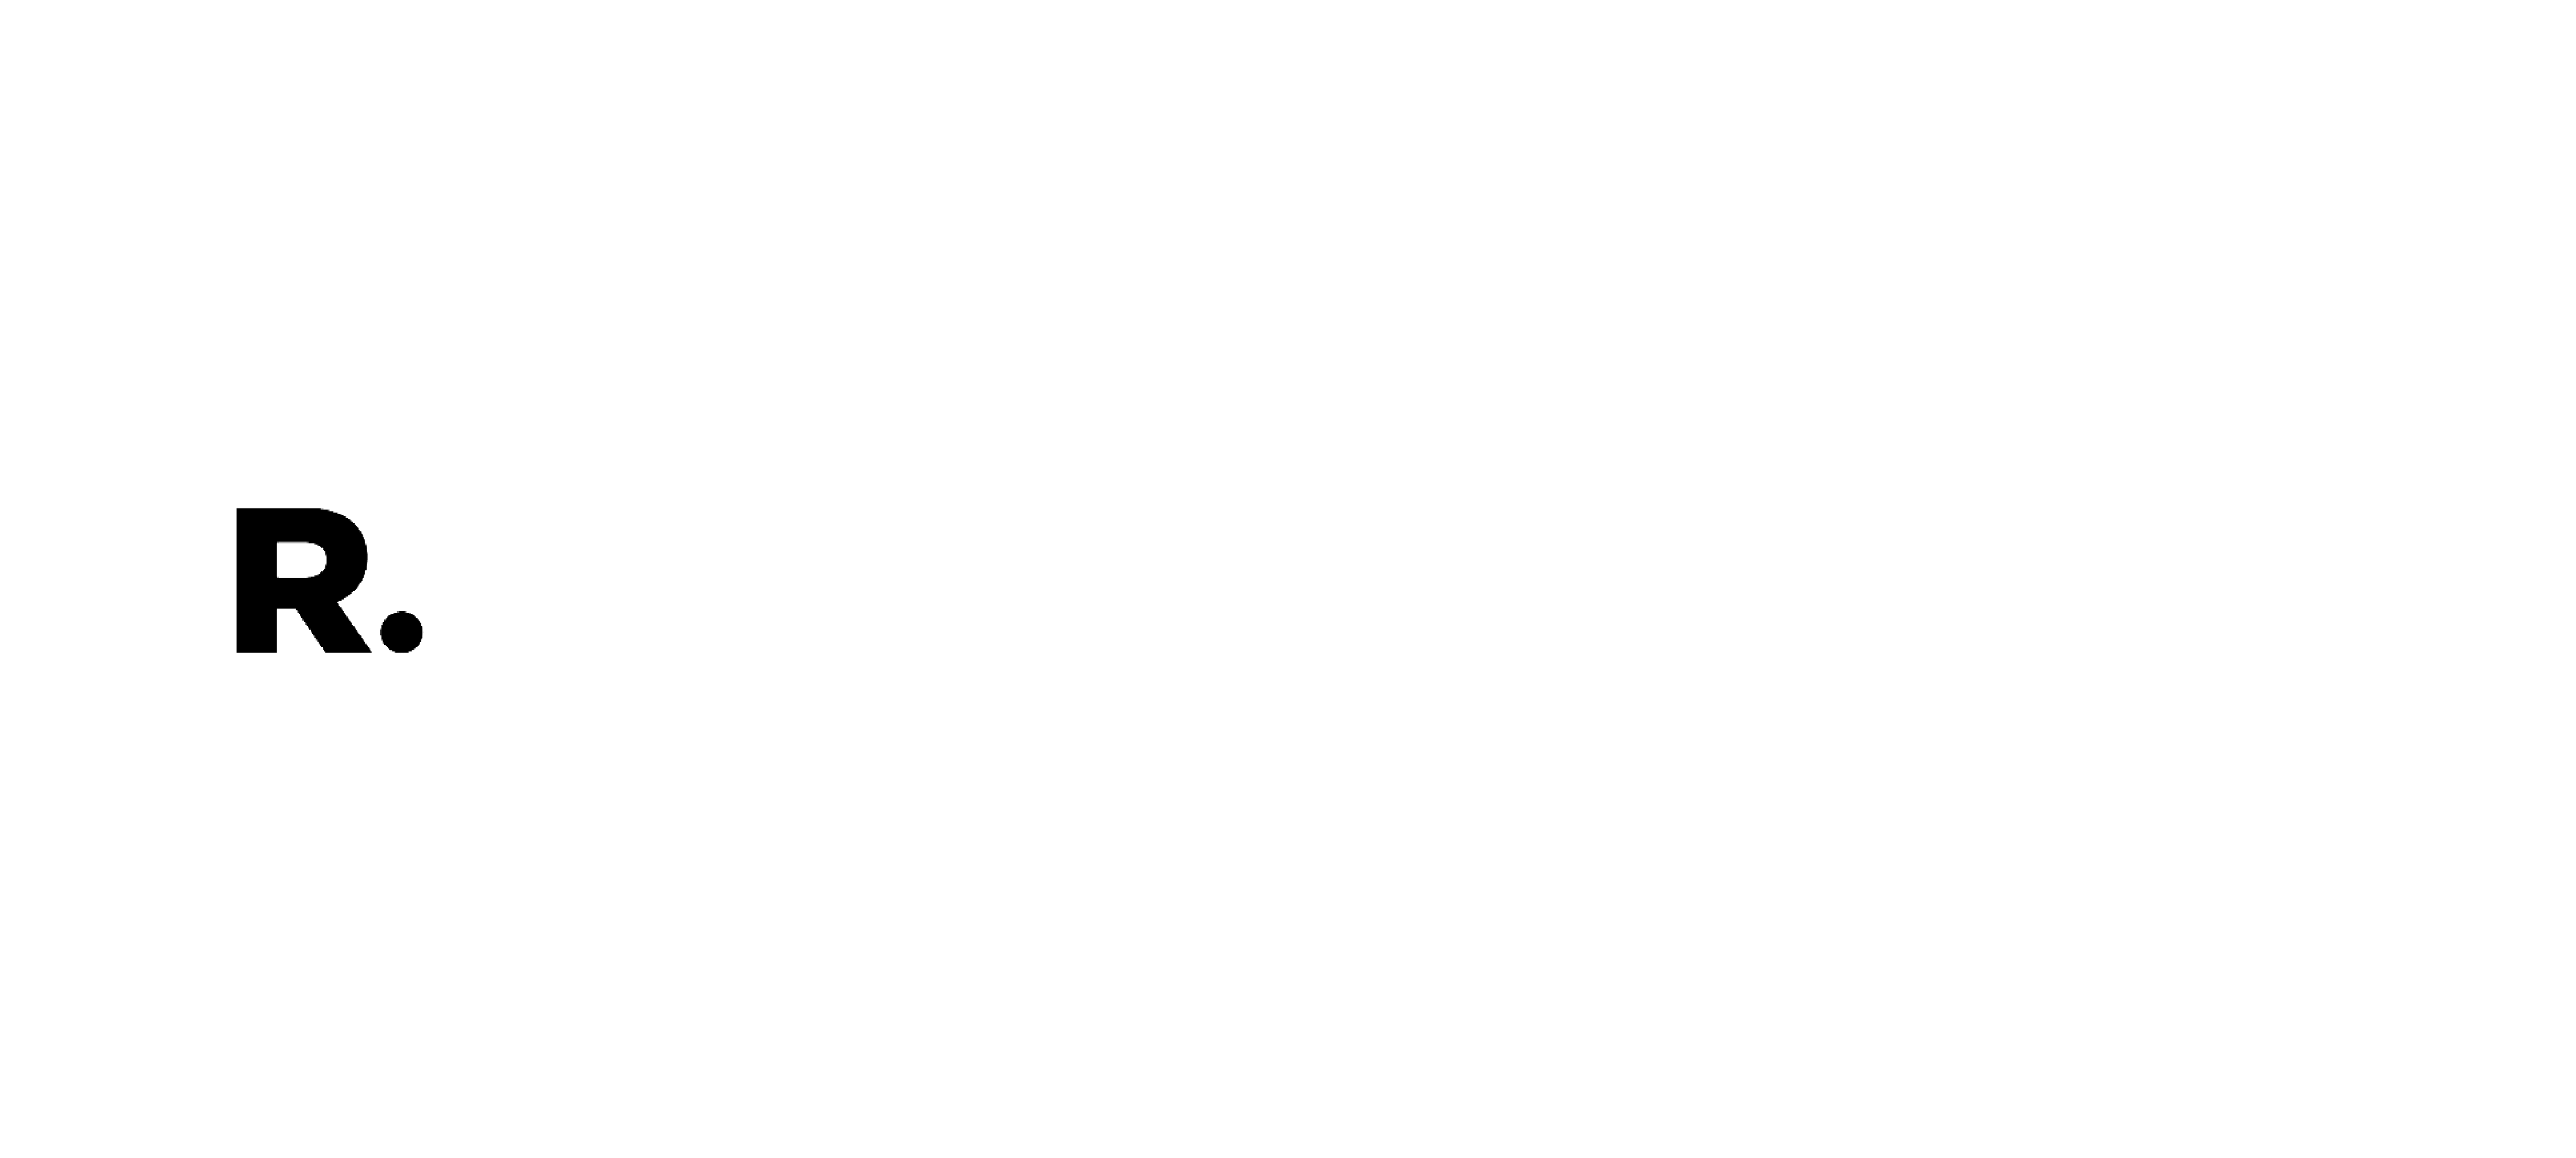 Republic World